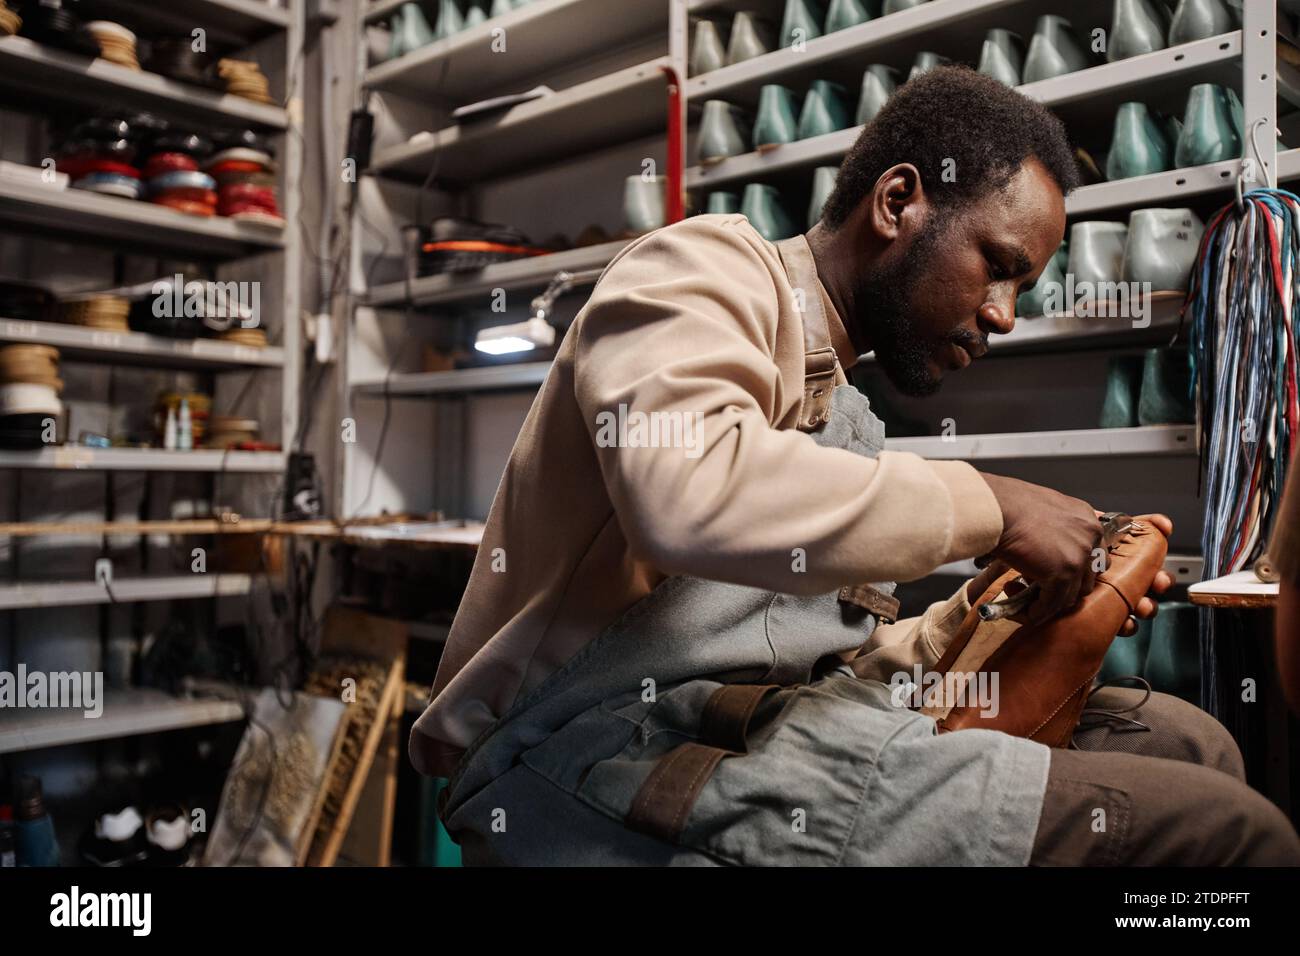 Junger afroamerikanischer männlicher Besitzer einer Schuhmacherei, der den oberen Teil des unfertigen Stiefels an der Sohle befestigt, während er am Arbeitsplatz sitzt Stockfoto